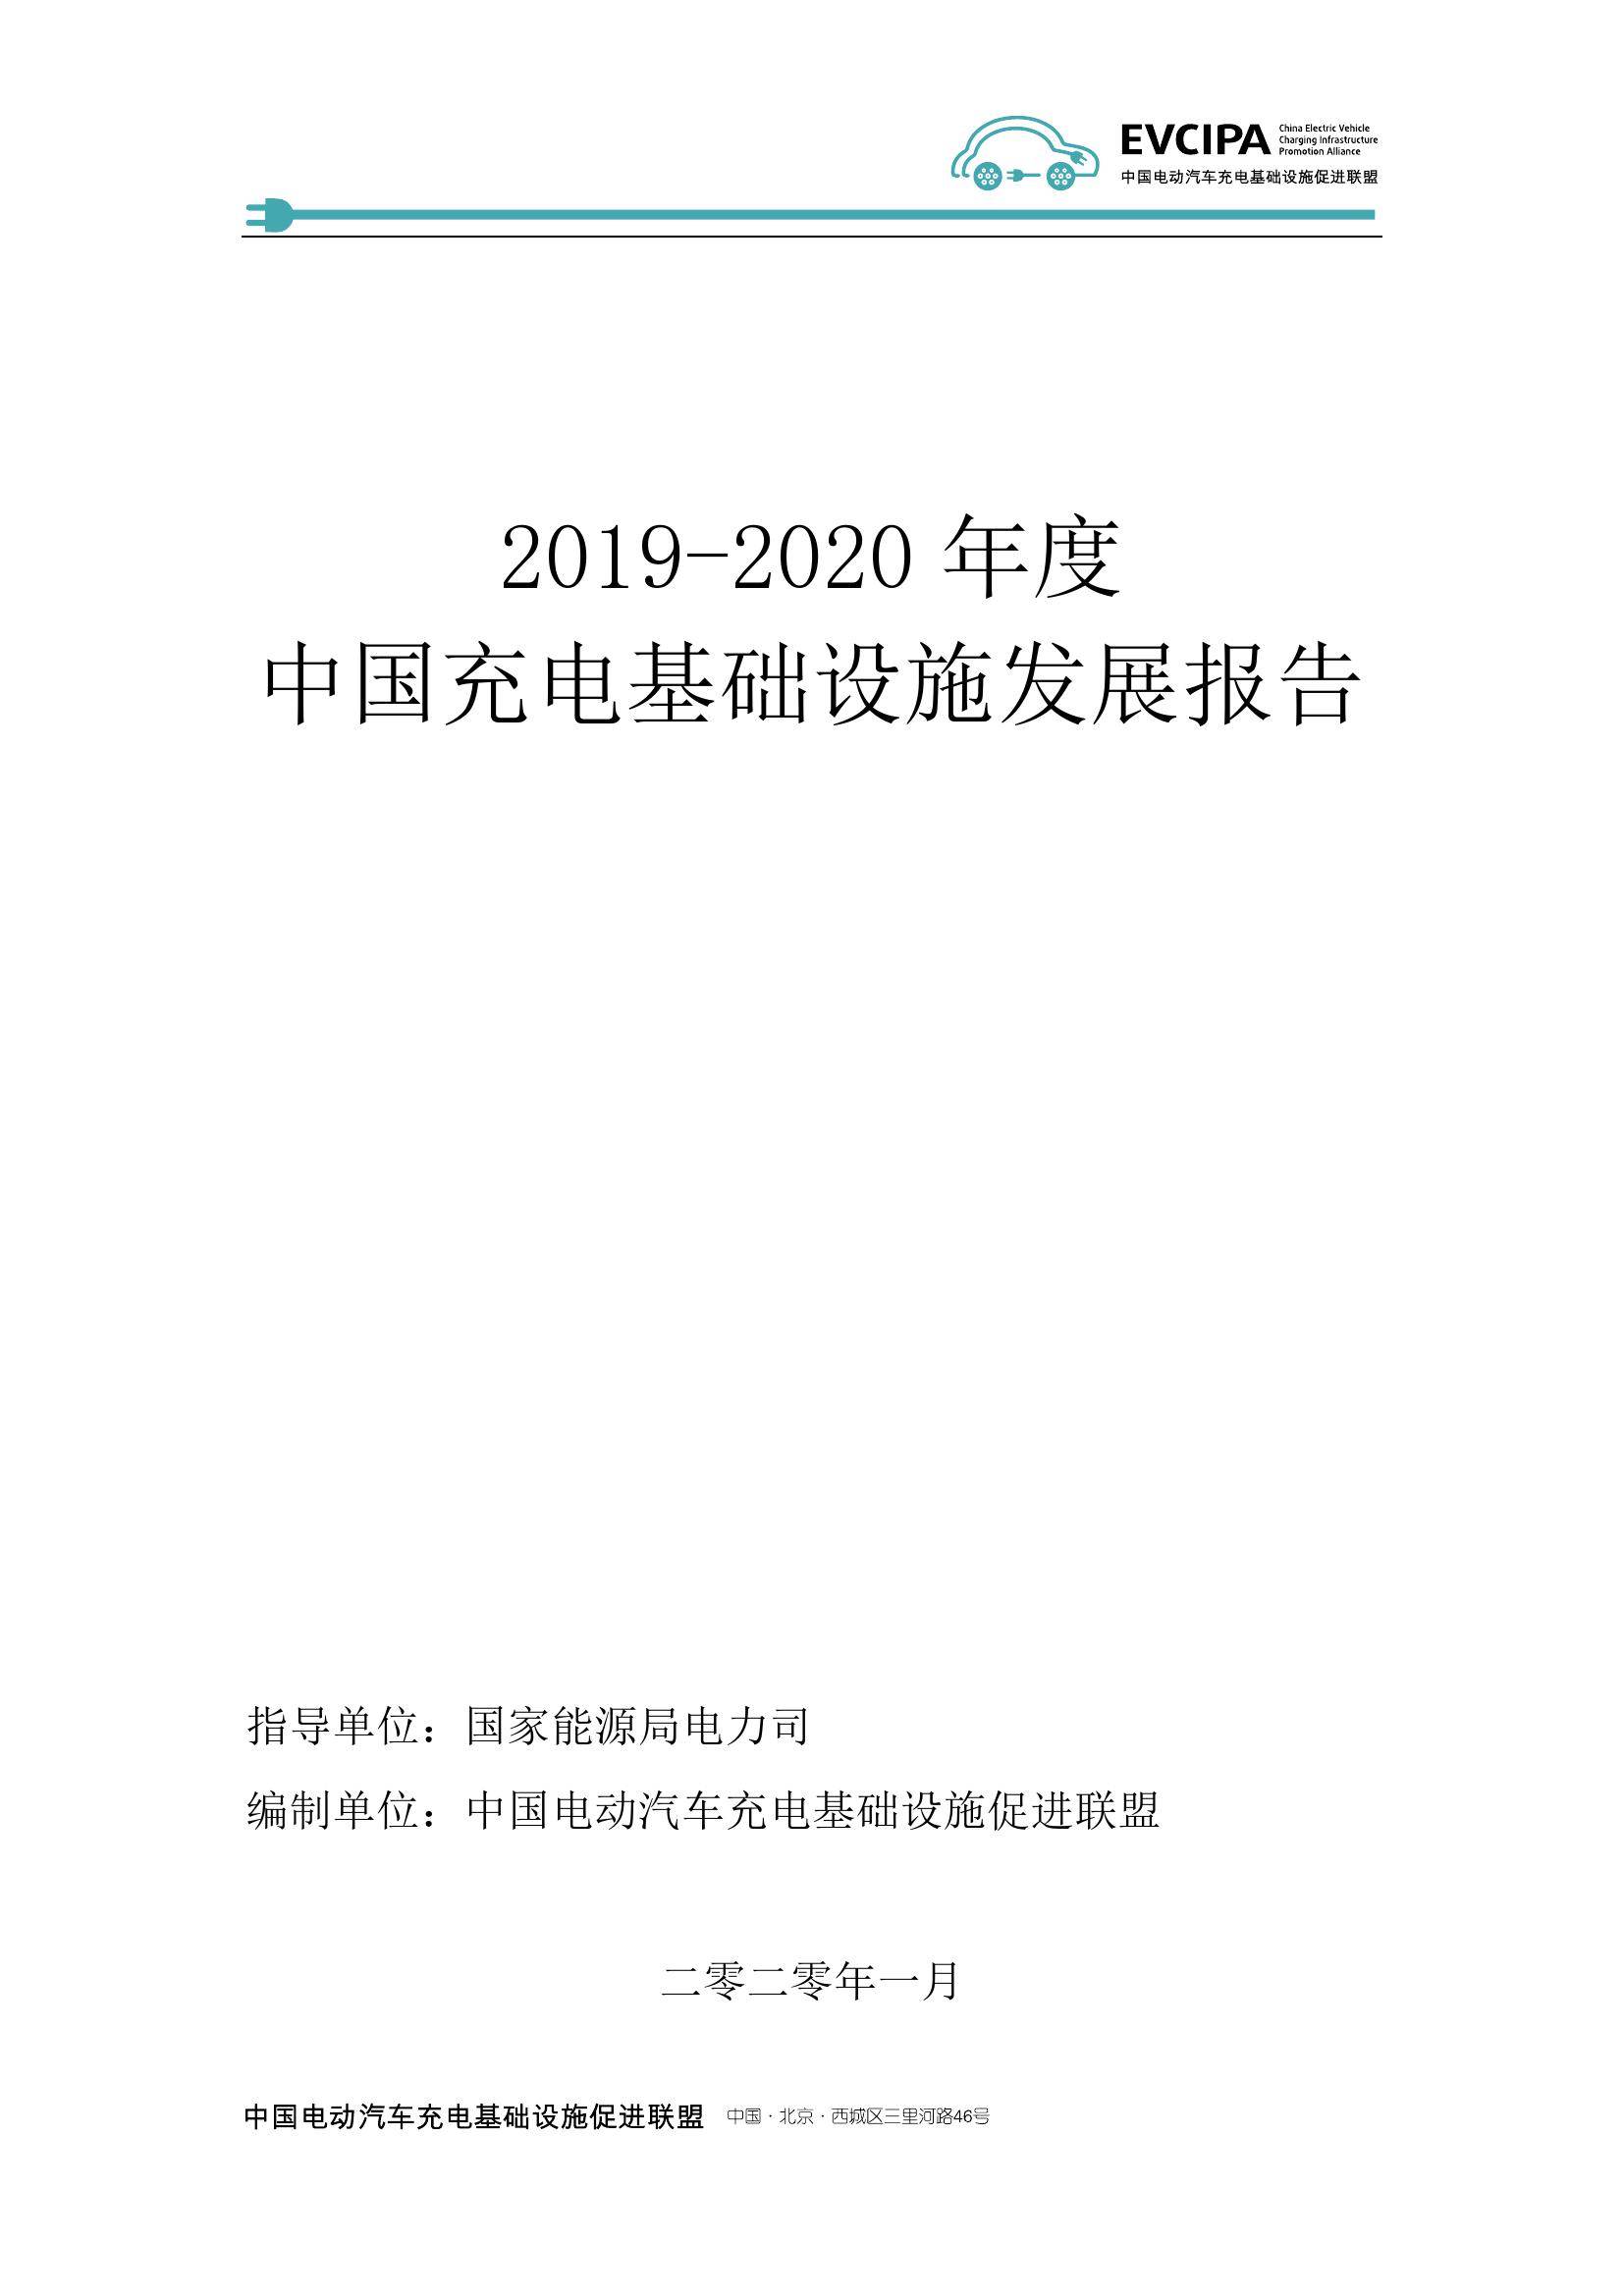 2019-2020年度中国充电基础设施发展报告_000002.jpg